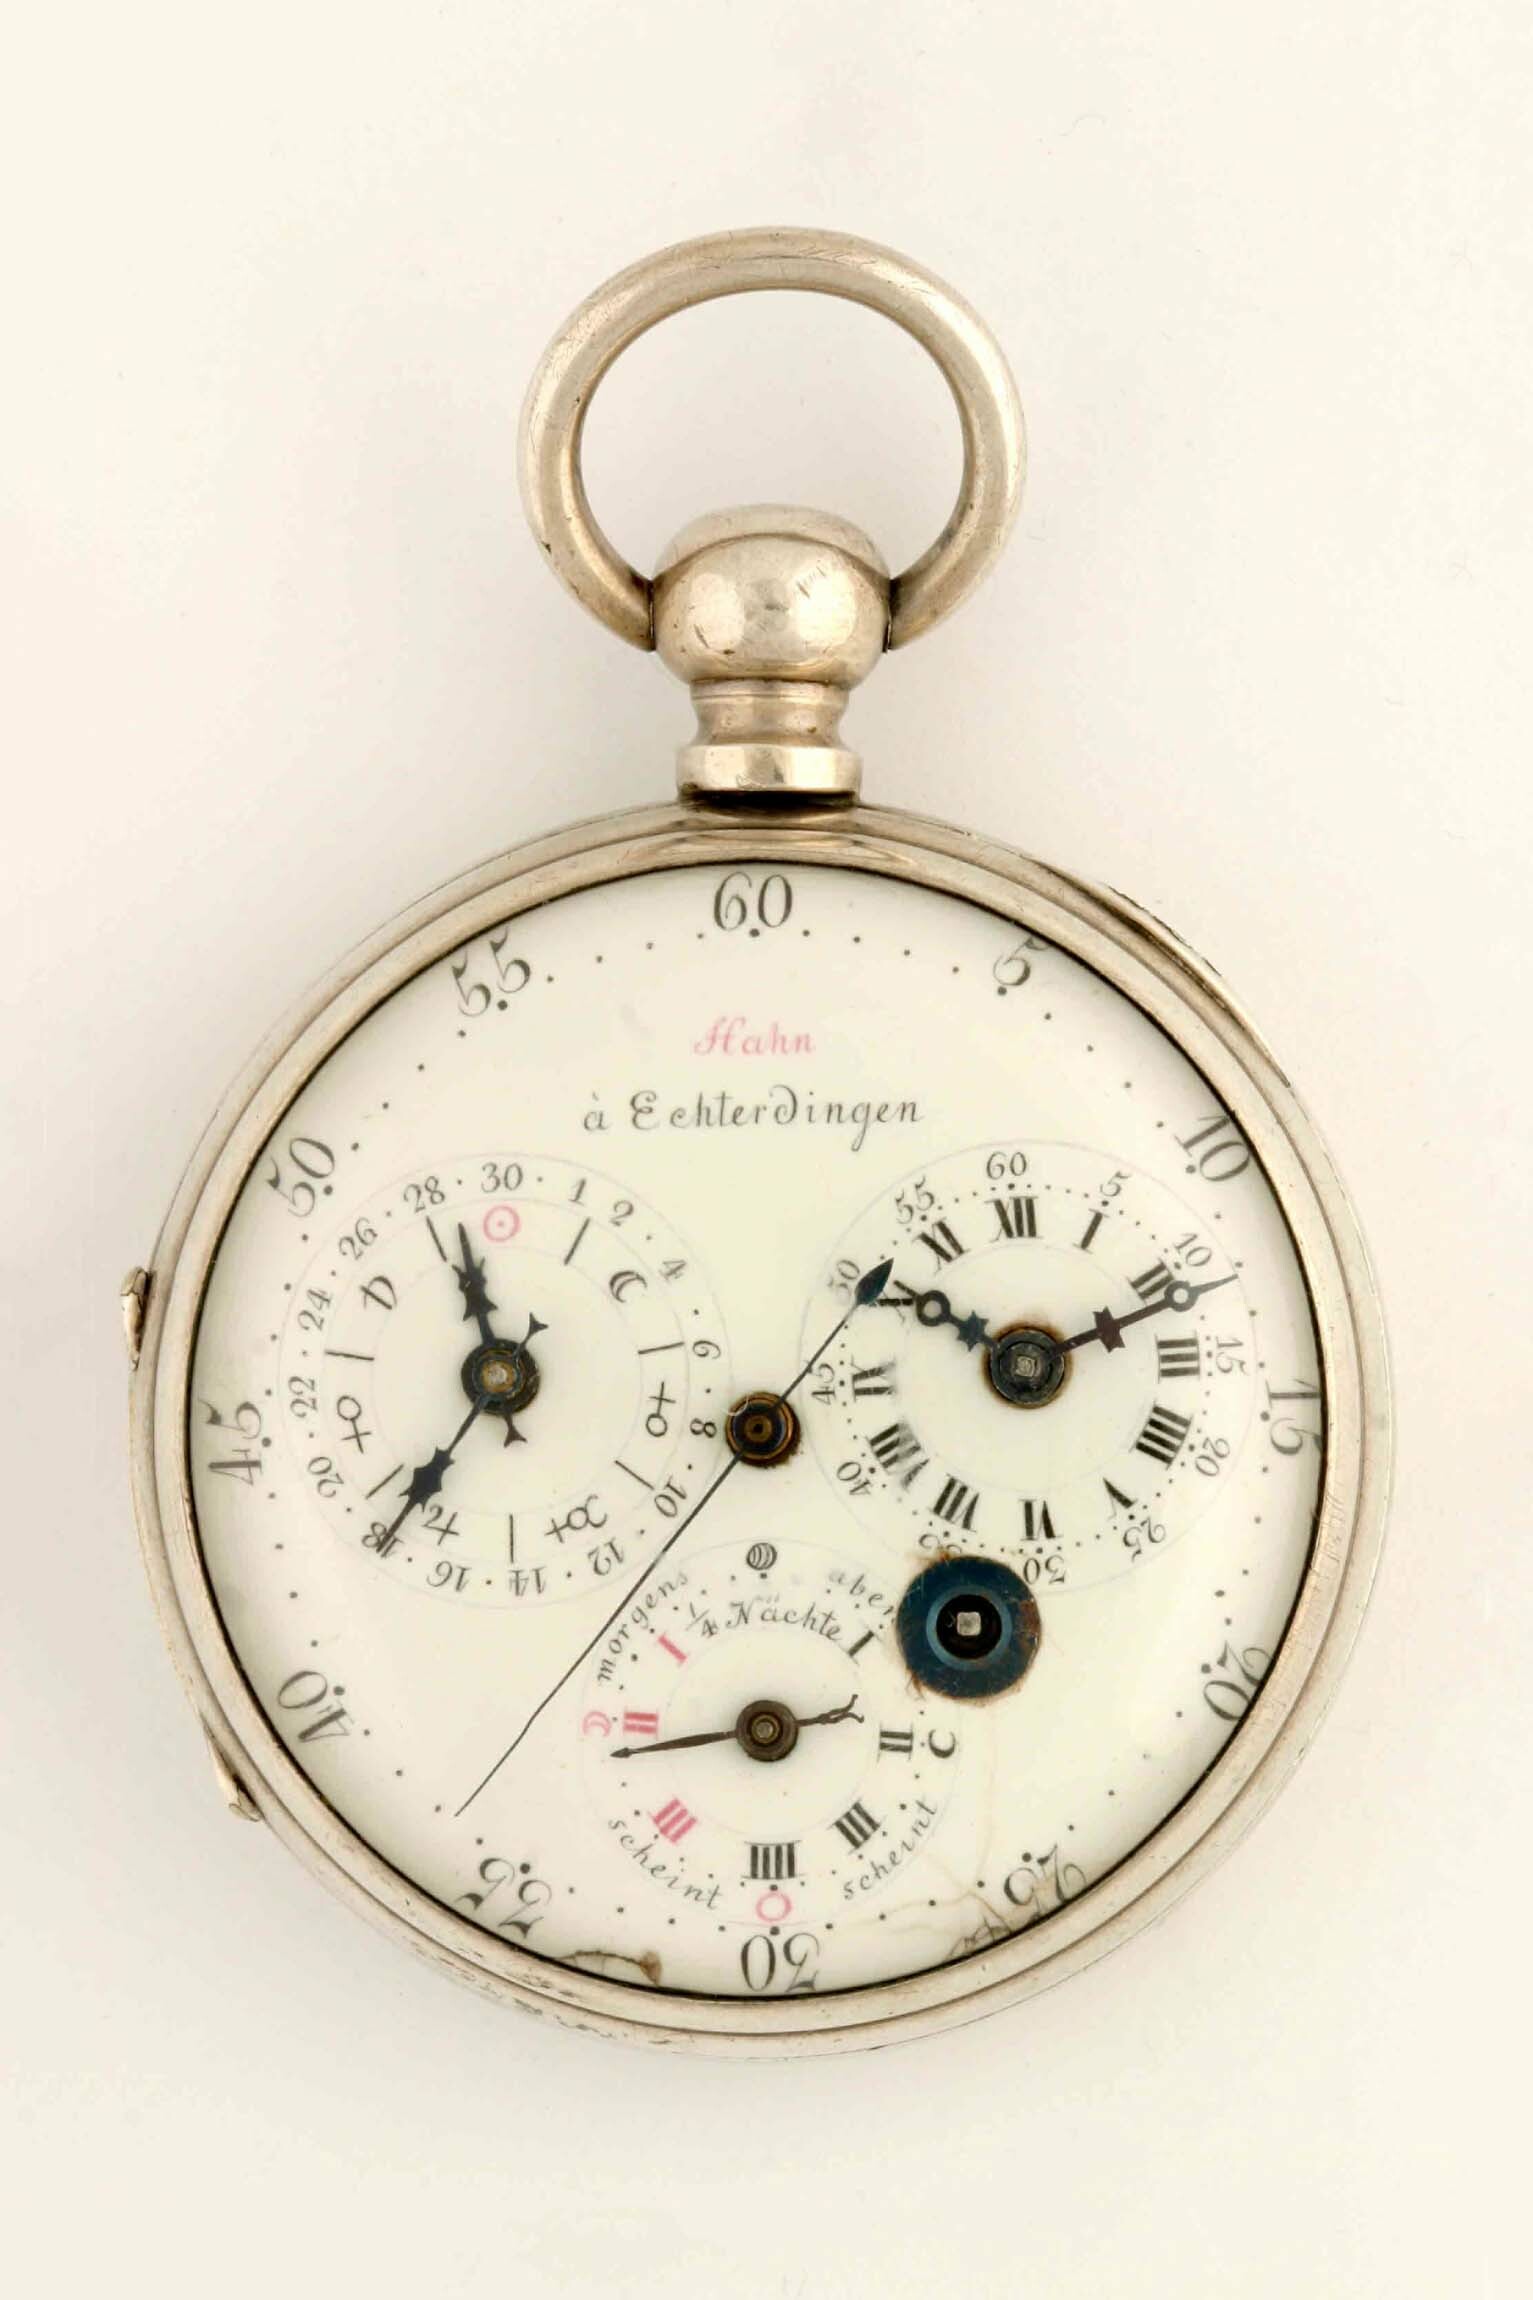 Taschenuhr, Philipp Matthäus Hahn, Echterdingen, um 1785 (Deutsches Uhrenmuseum CC BY-SA)